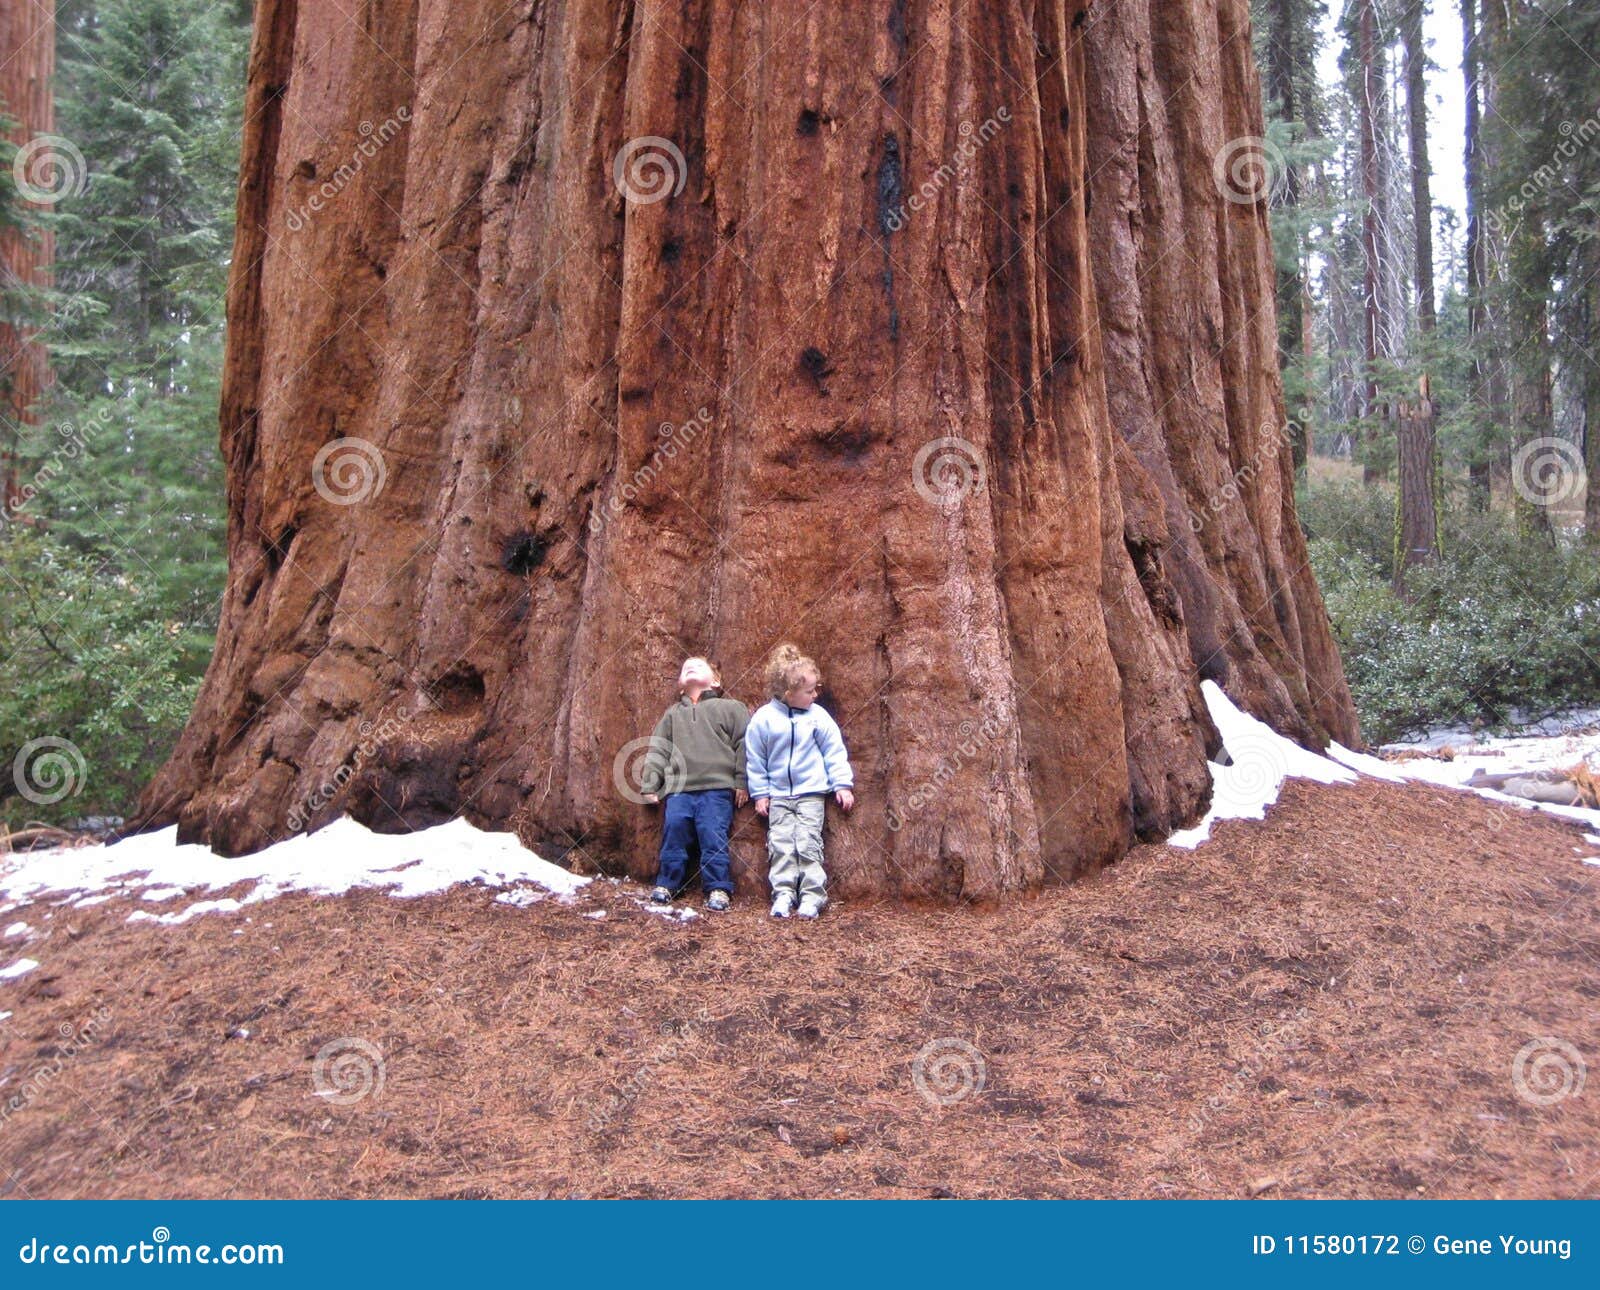 children against sequoia tree